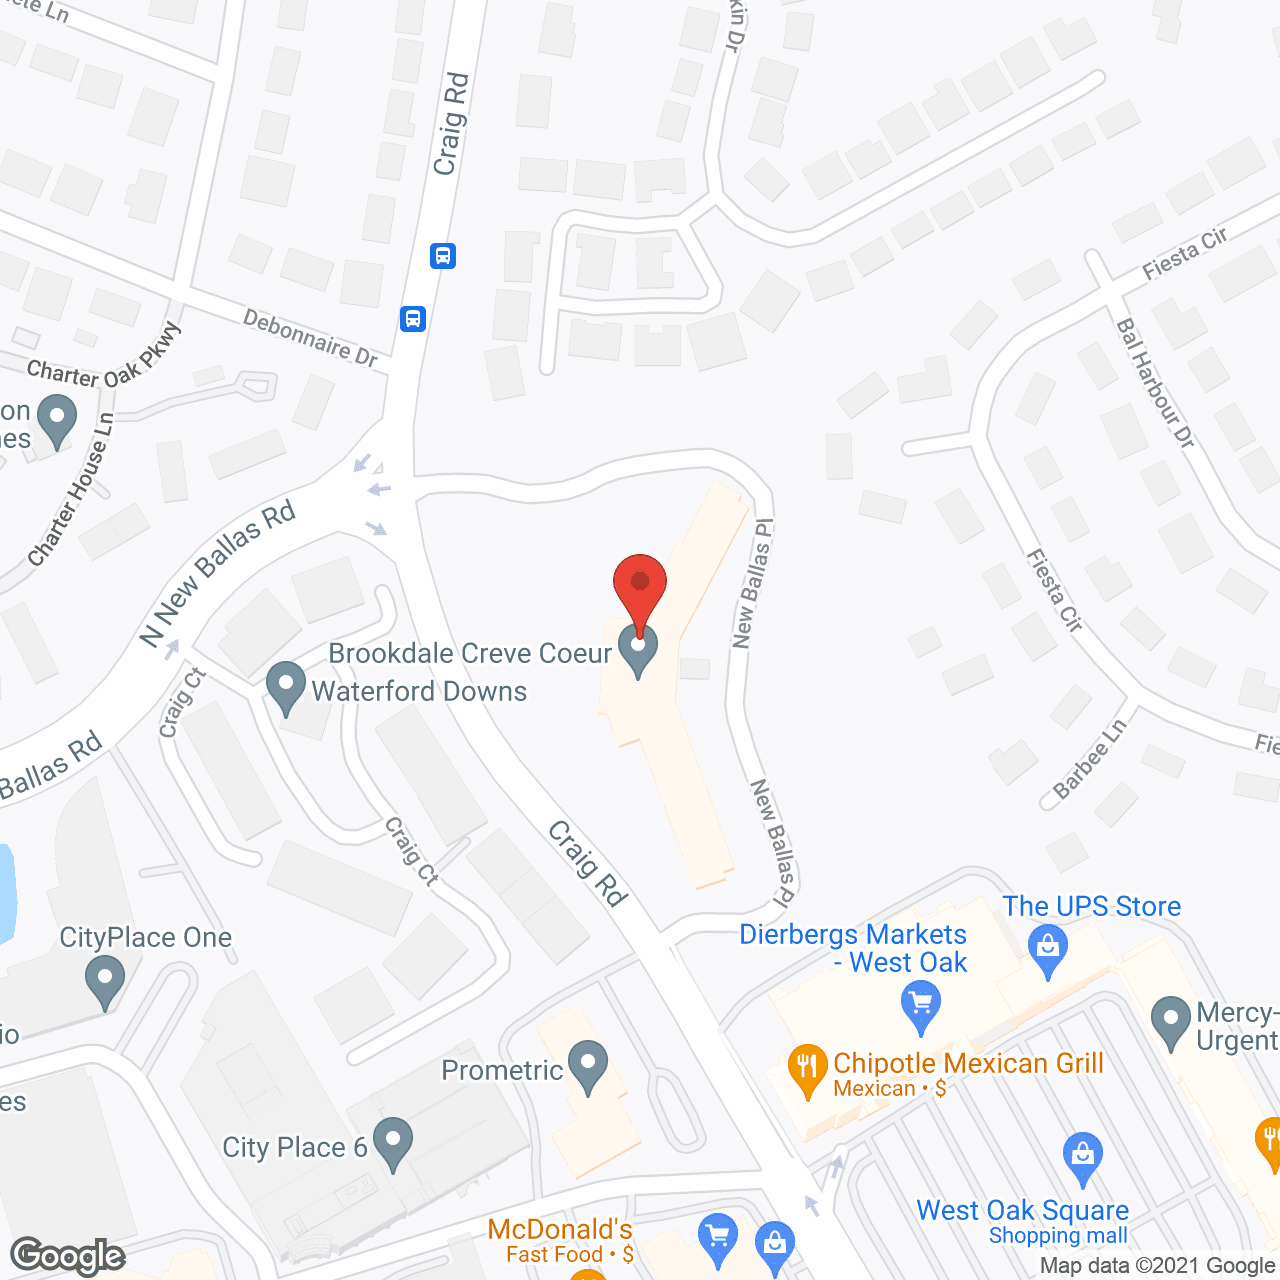 Brookdale Creve Coeur in google map